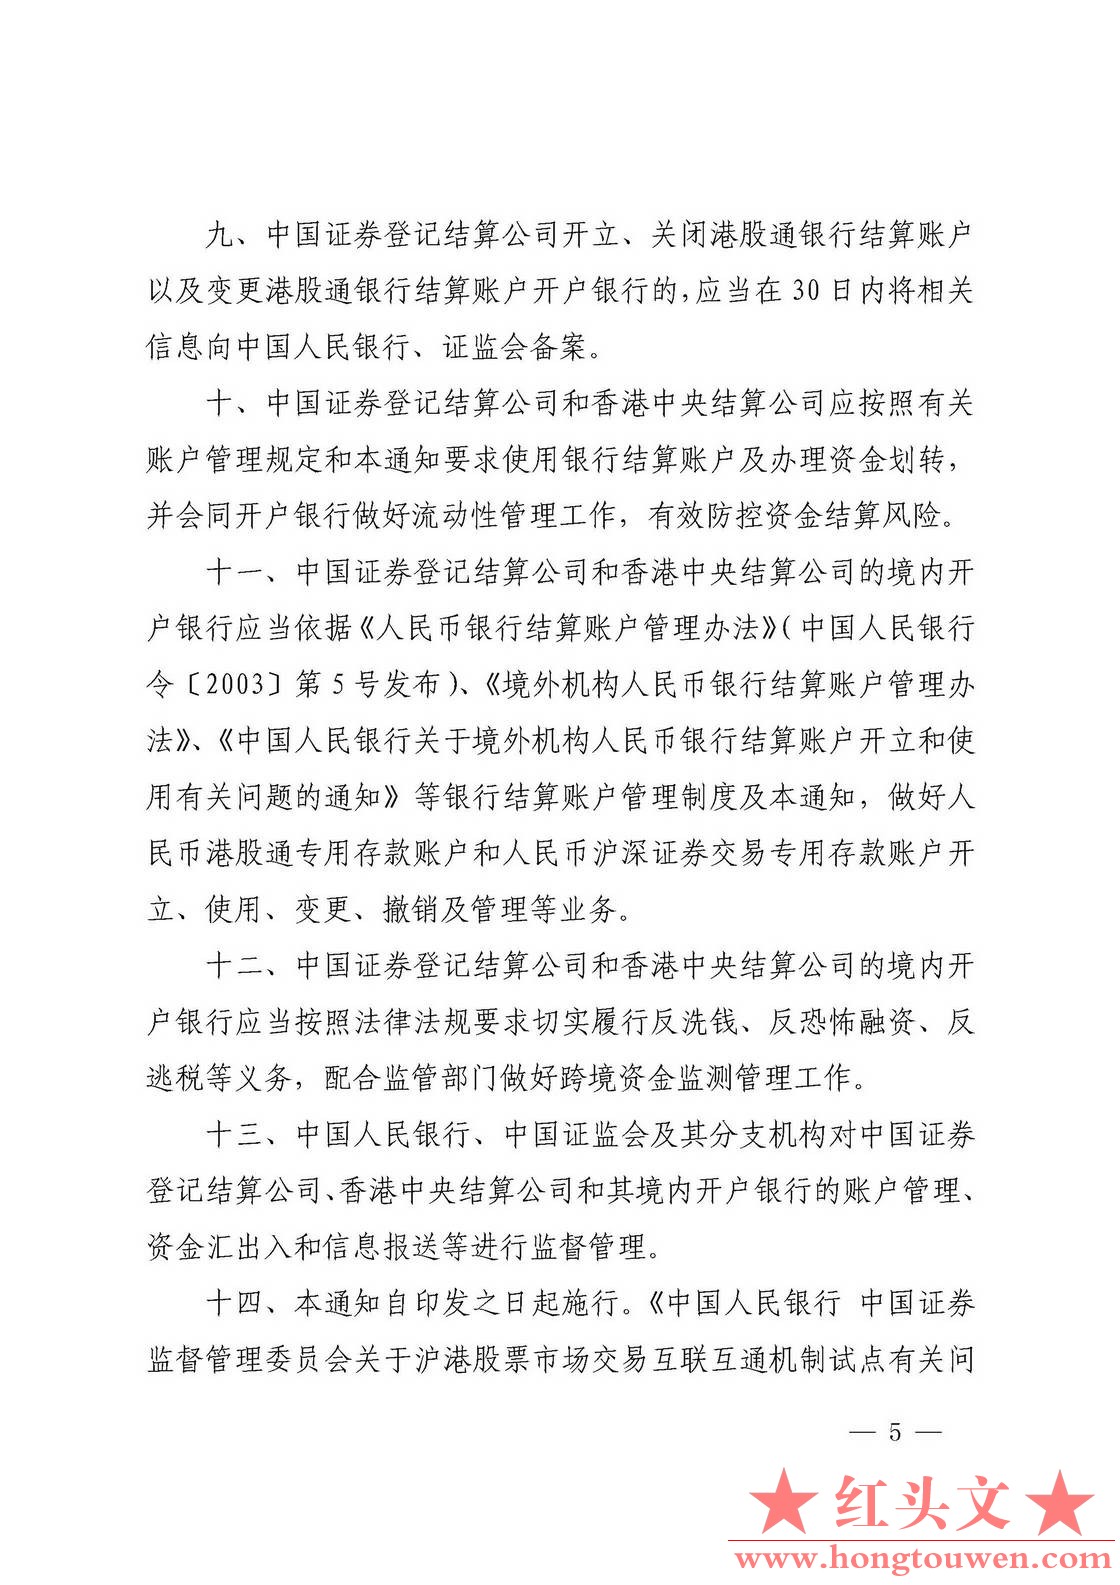 银发[2016]282号-中国人民银行 中国证券监督管理委员会关于内地和香港股票市场交易互.jpg